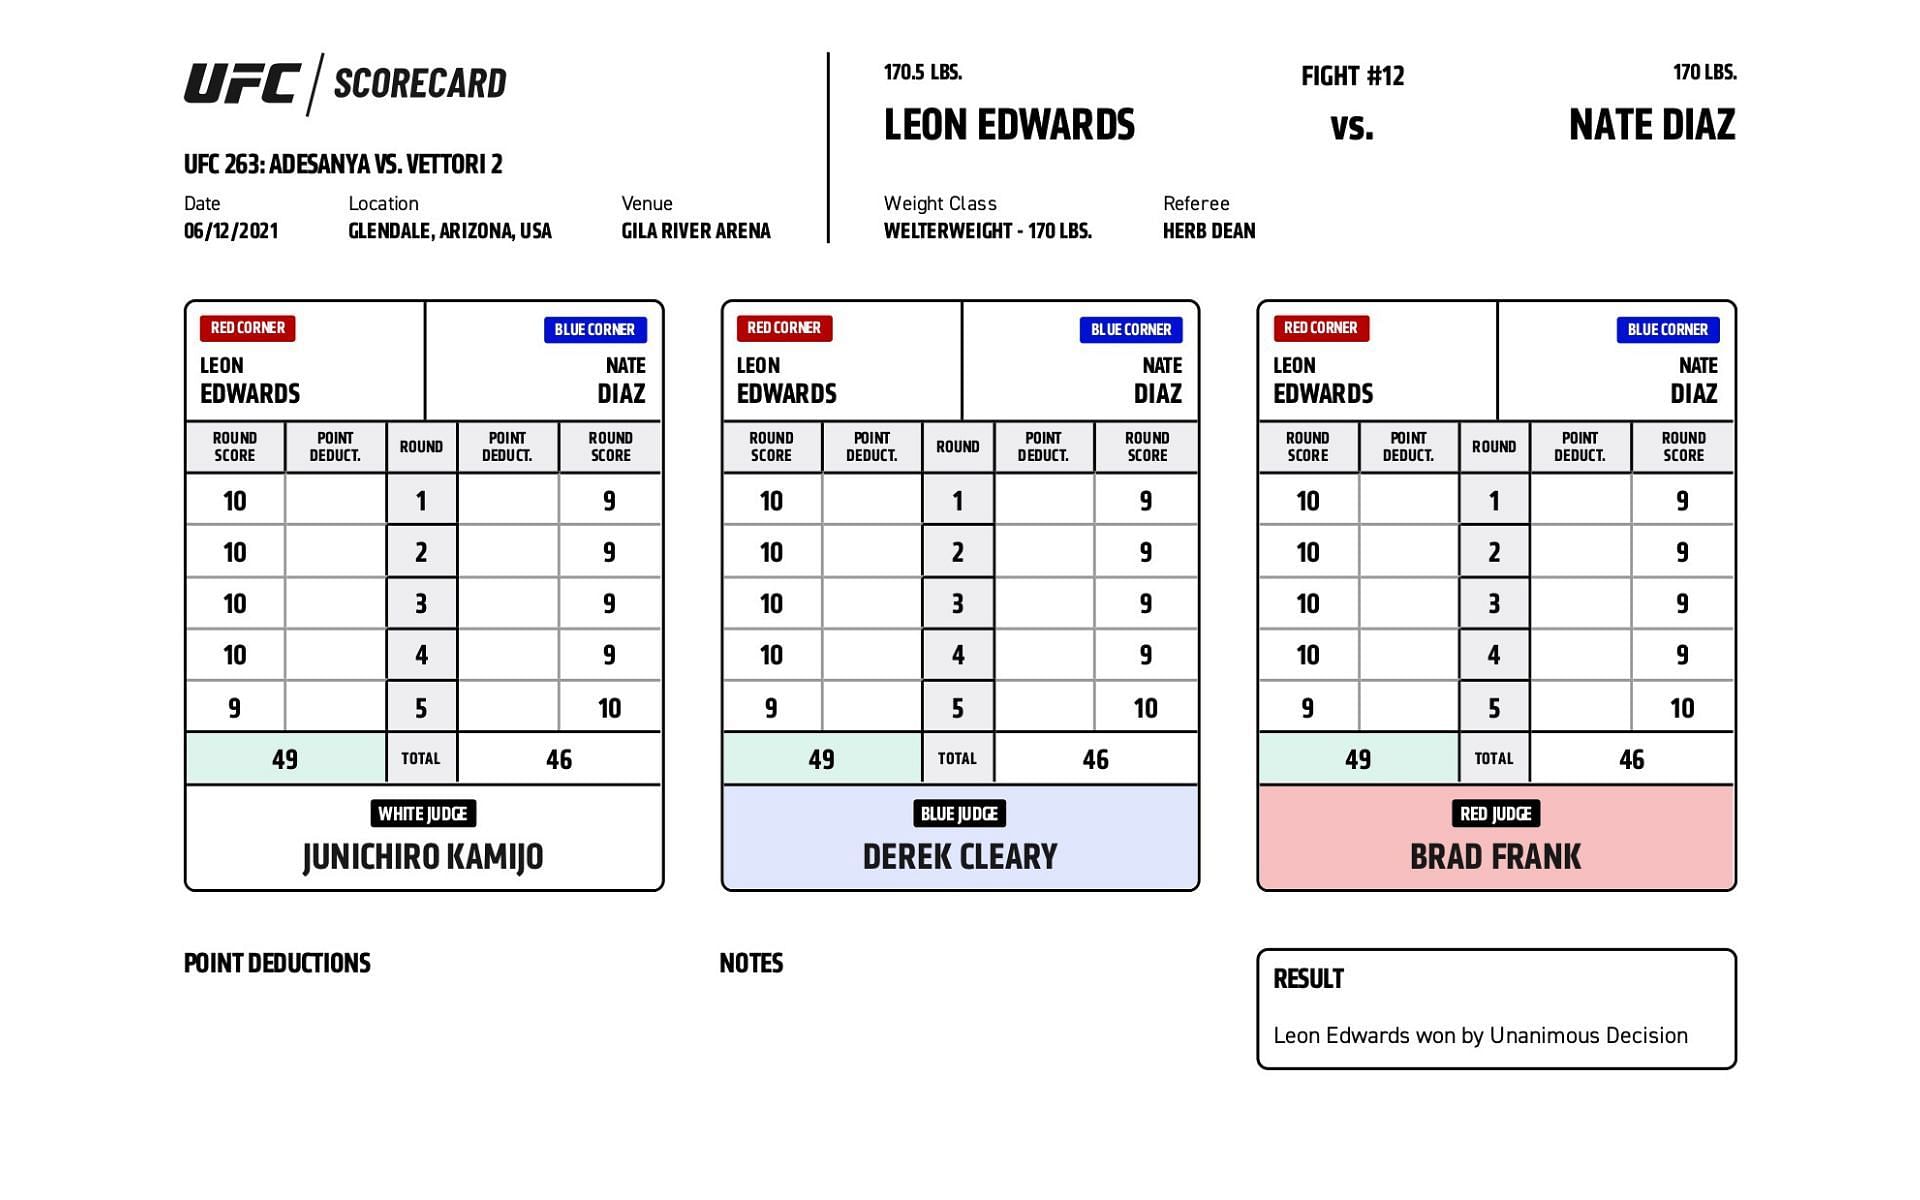 Nate Diaz vs. Leon Edwards scorecards [Image courtesy: ufc.com]